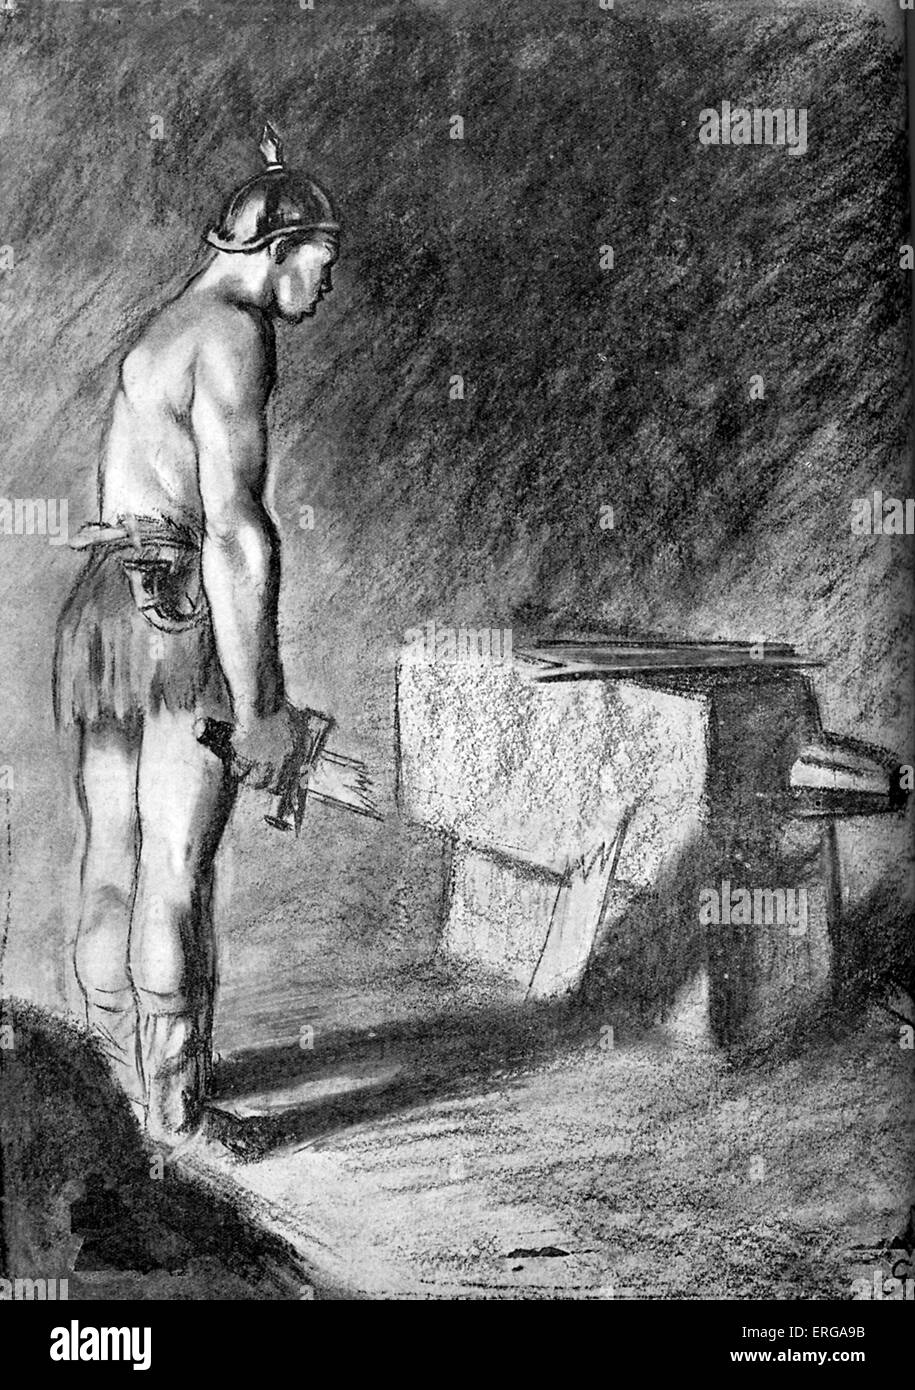 La debilidad militar prusiano - caricatura de la I Guerra Mundial (Británico). La simbólica espada de soldado prusiano se rompe en el yunque Foto de stock